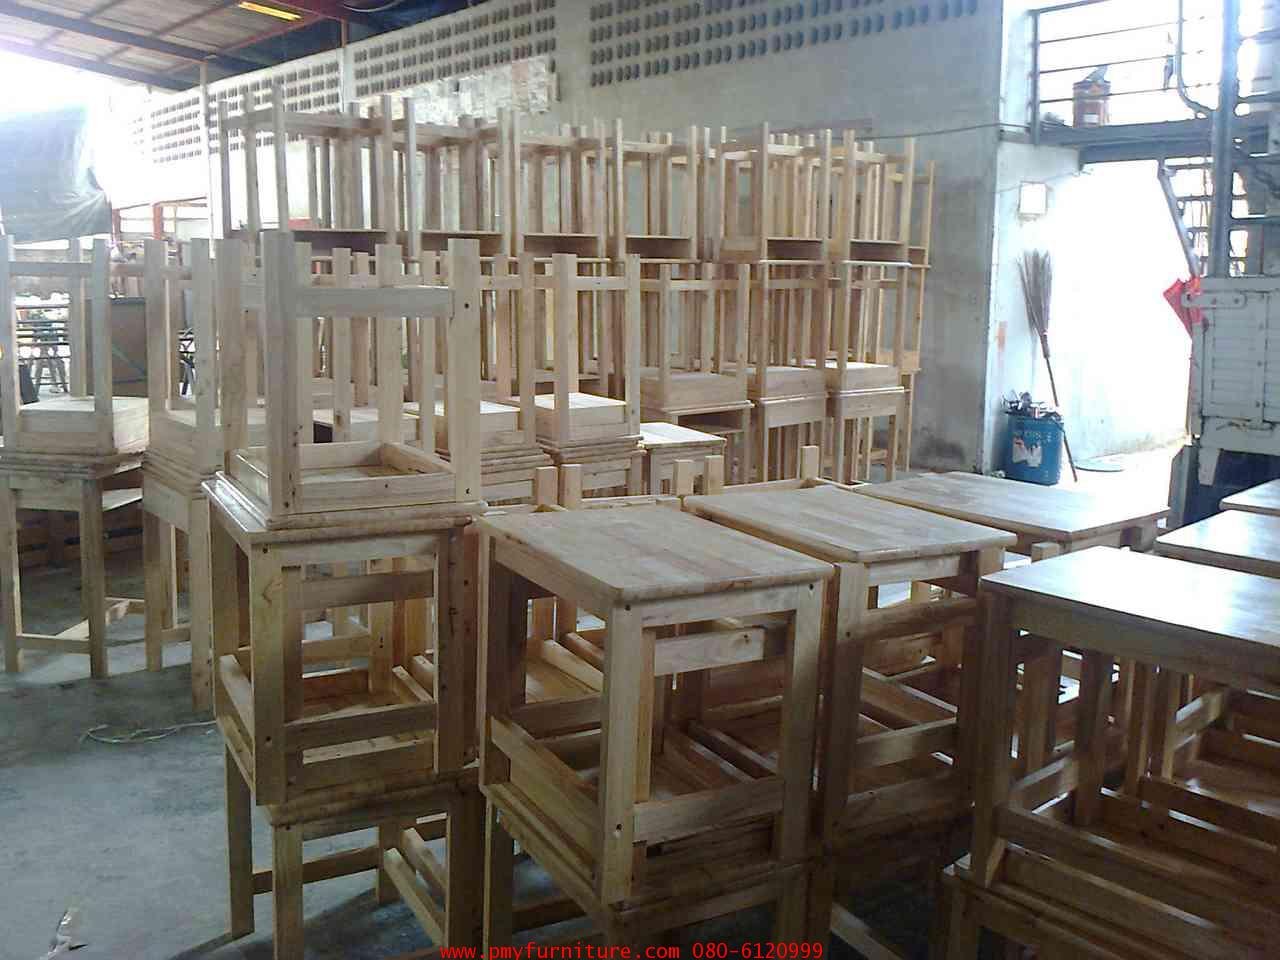 ส่งมอบโต๊ะเก้าอี้นักเรียนไม้ยางพารา ระดับมัธยม มหาวิทยาลัยราชภัฎสวนดุสิต ศูนย์หัวหิน